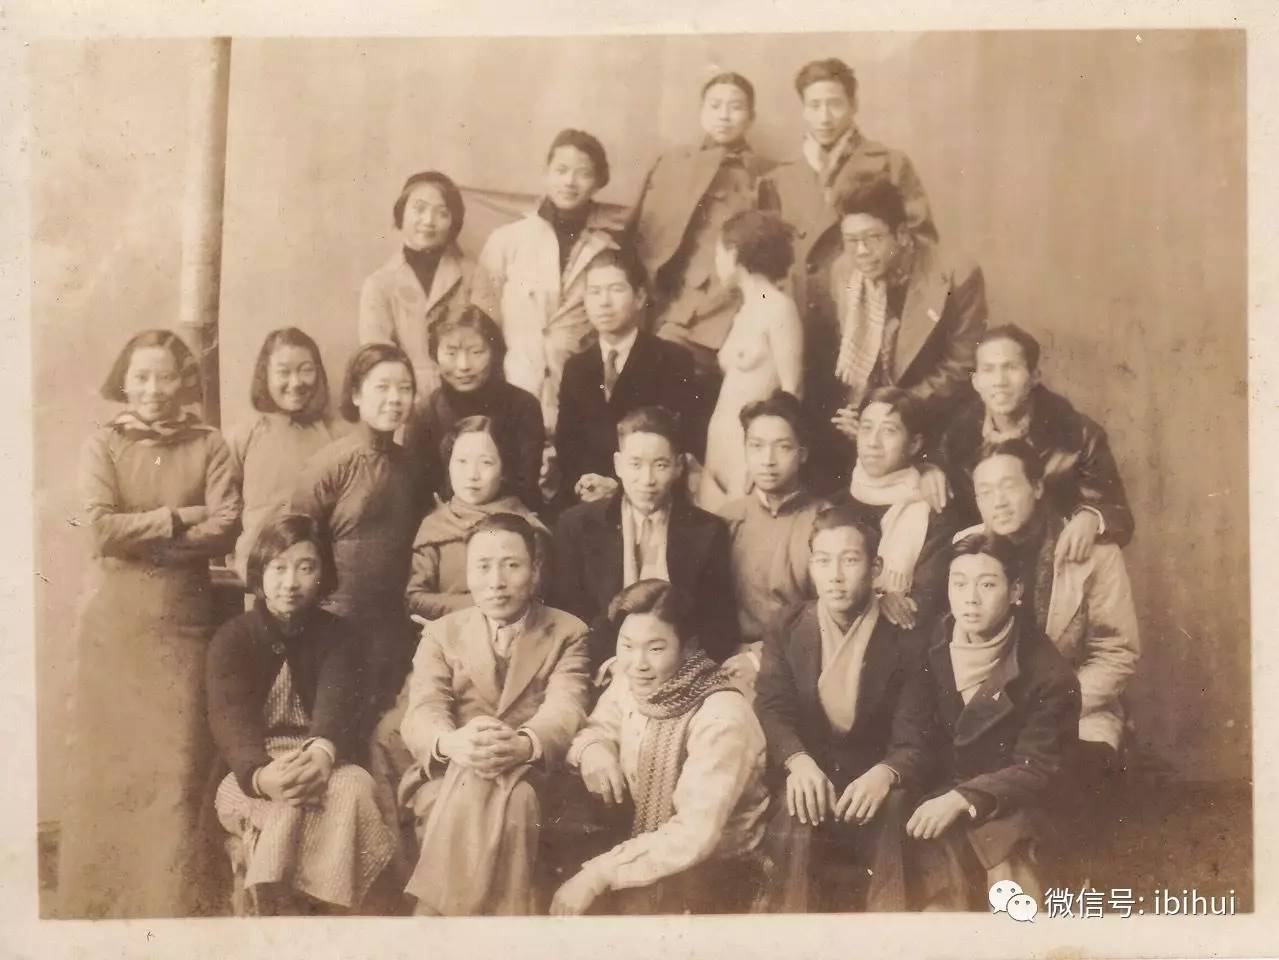 1935年底，上海美术专科学校第17届西画系的师生与一位裸体模特的合影。